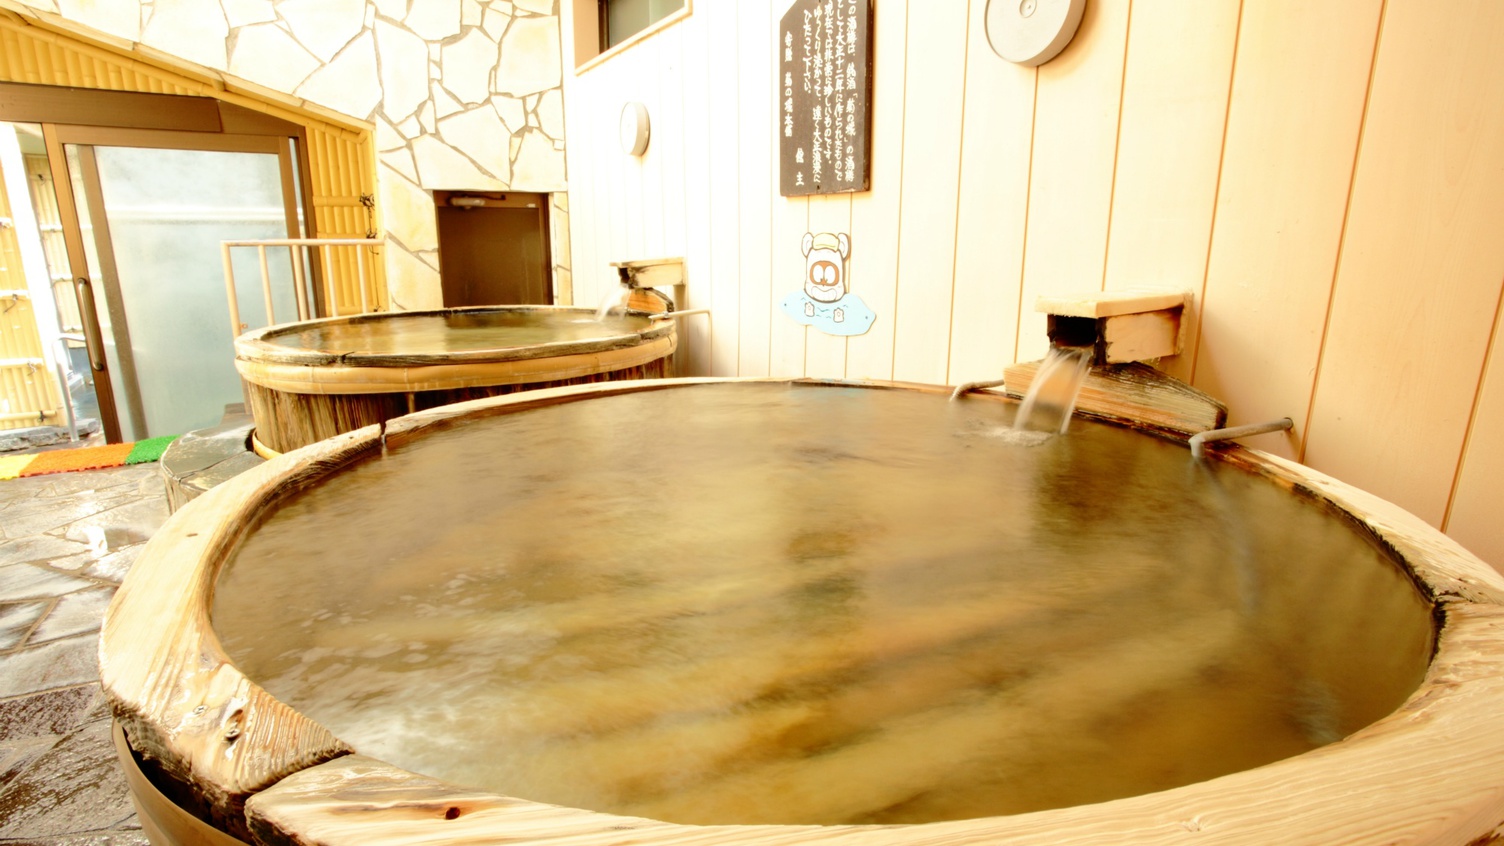 【楽天月末セール】熊本をた〜っぷり観光したあとは…天然エステ温泉をご満喫♪（お食事なし）R64